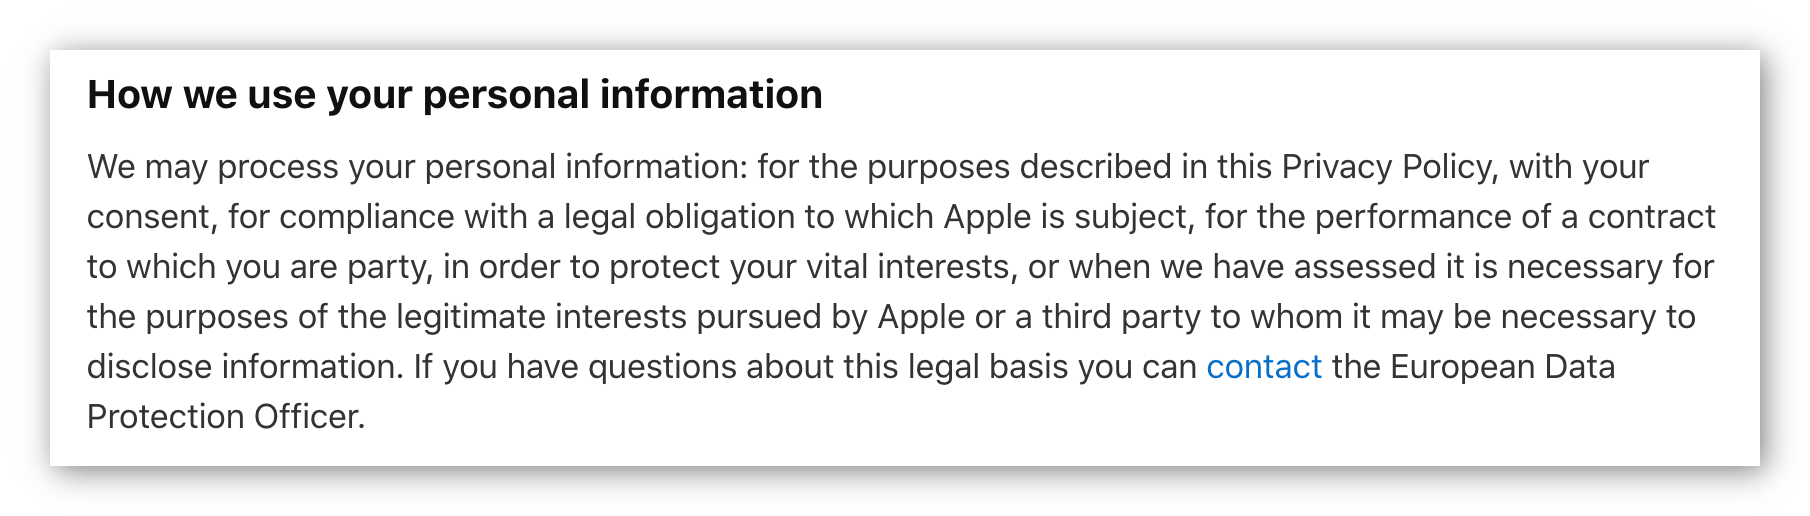 苹果隐私政策的屏幕截图